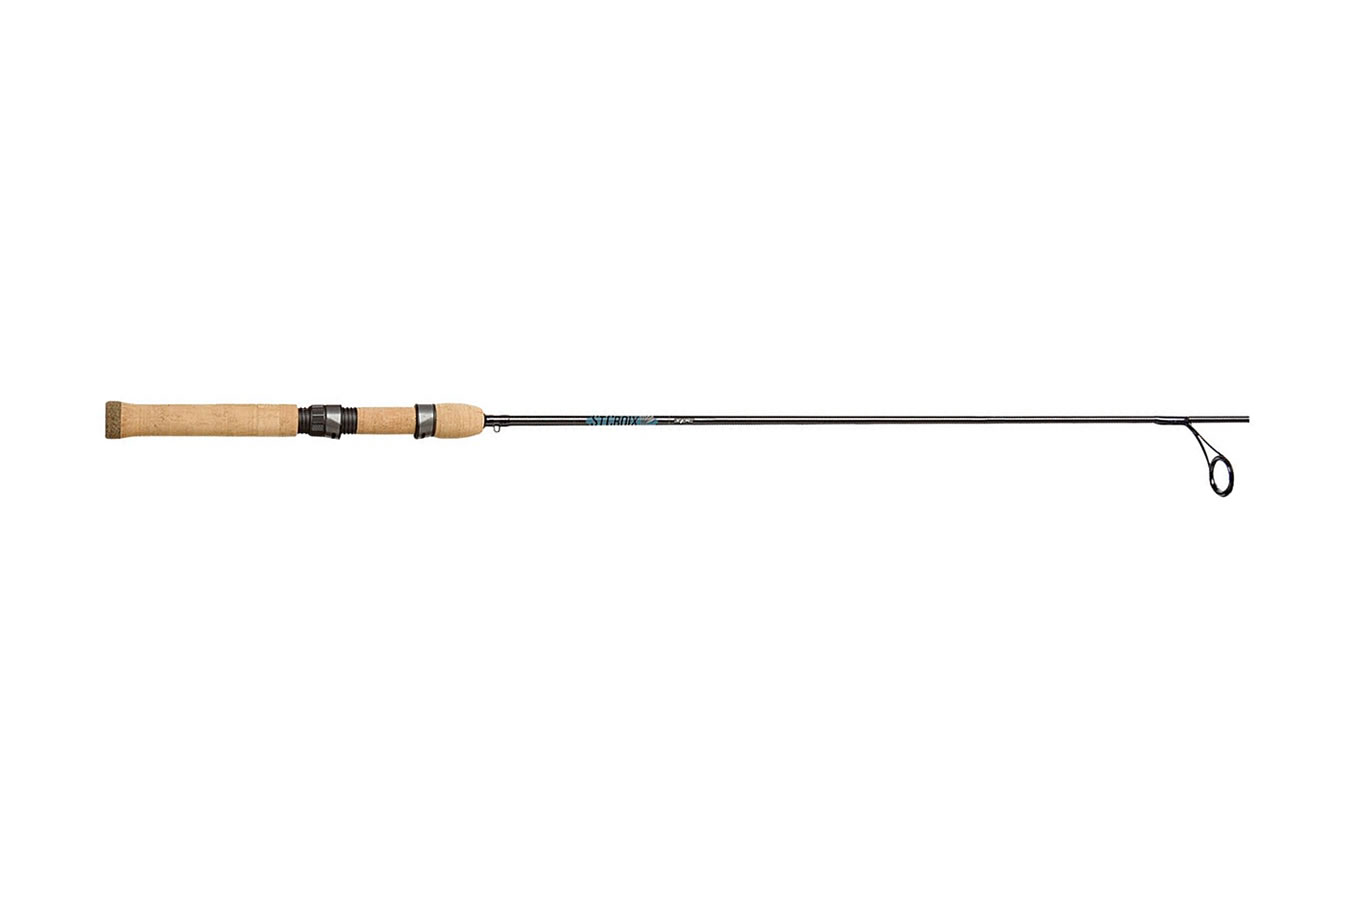 St Croix Avid 6 ft 6 in - Medium Heavy Spinning Rod